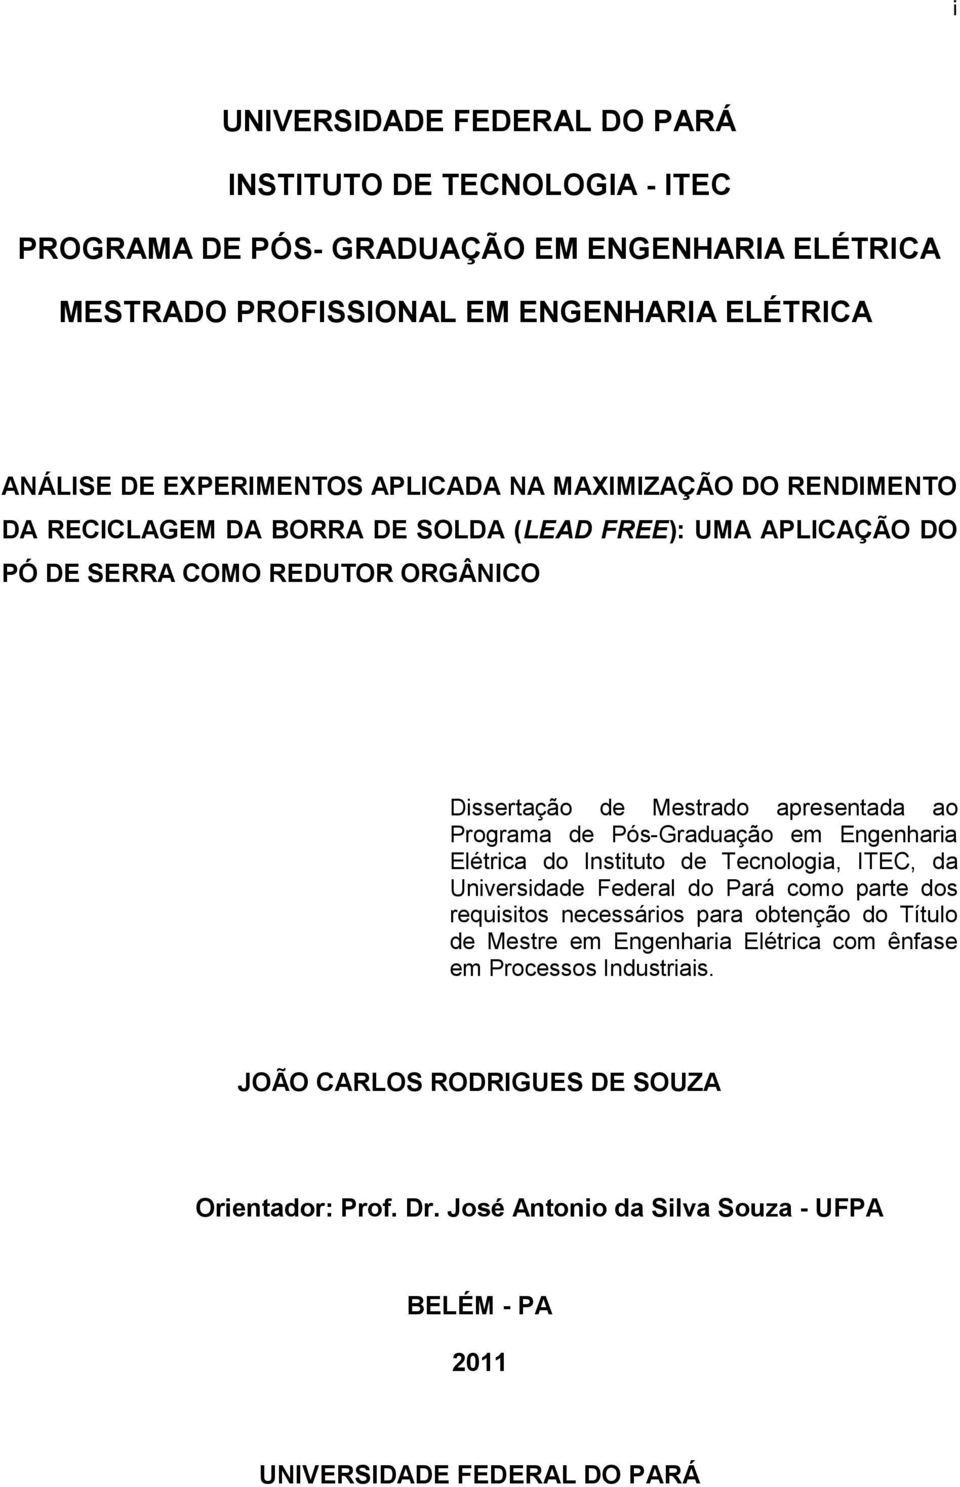 de Pós-Graduação em Engenharia Elétrica do Instituto de Tecnologia, ITEC, da Universidade Federal do Pará como parte dos requisitos necessários para obtenção do Título de Mestre em